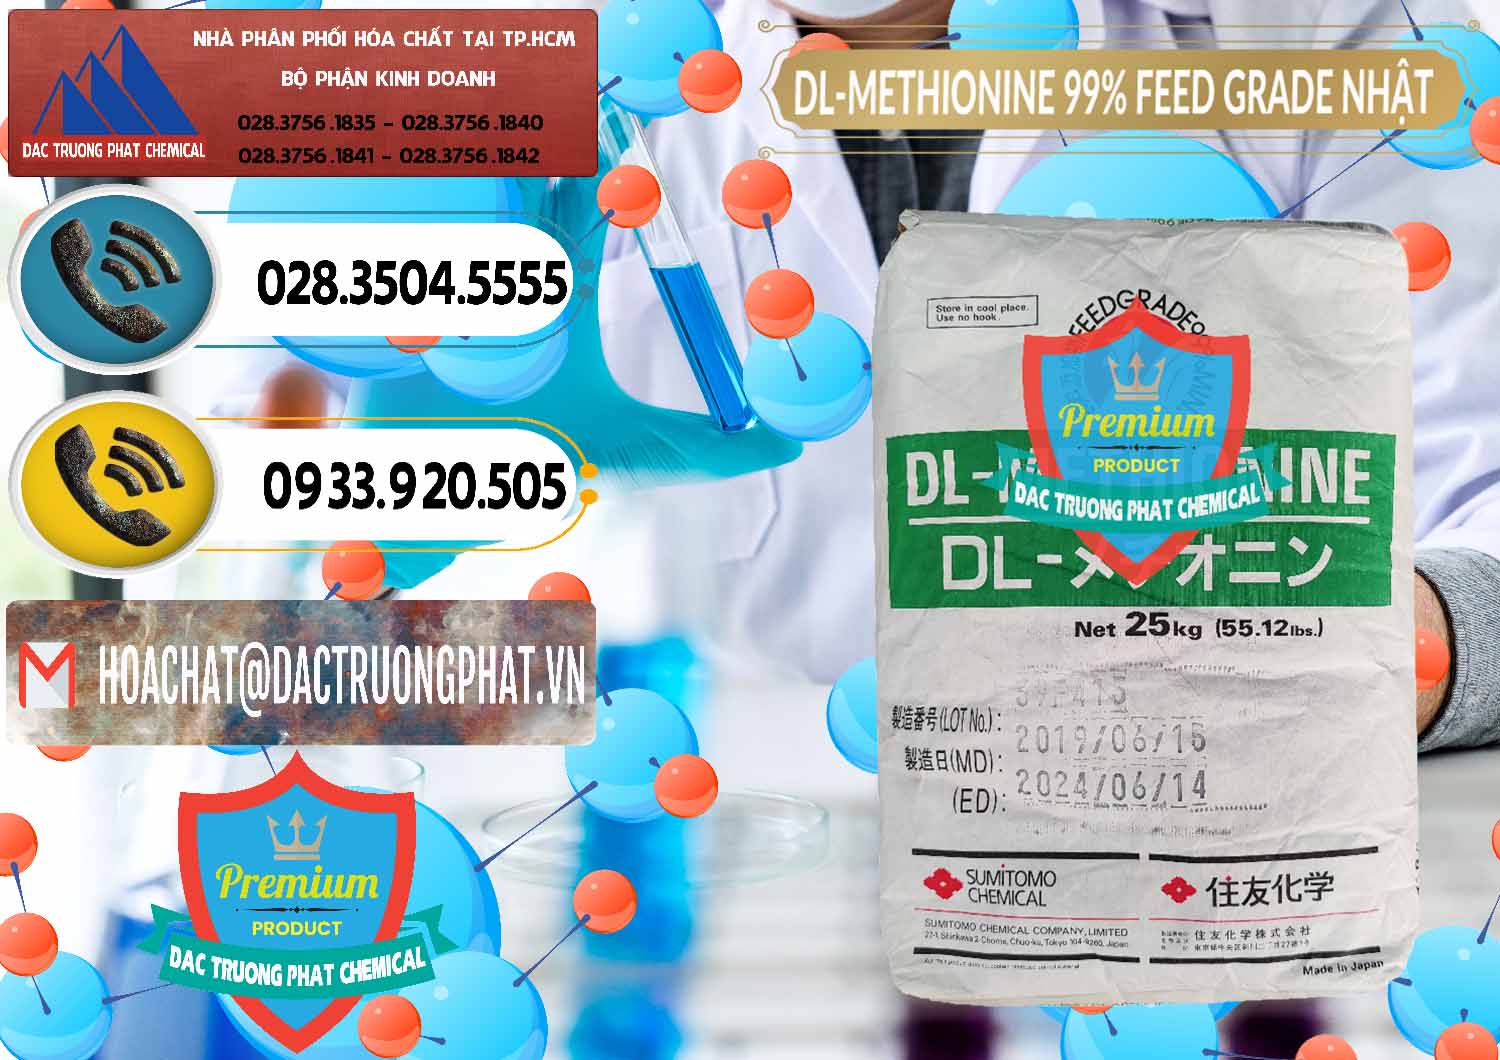 Nơi chuyên cung cấp _ bán DL-Methionine - C5H11NO2S Feed Grade Sumitomo Nhật Bản Japan - 0313 - Nơi cung ứng & phân phối hóa chất tại TP.HCM - hoachatdetnhuom.vn